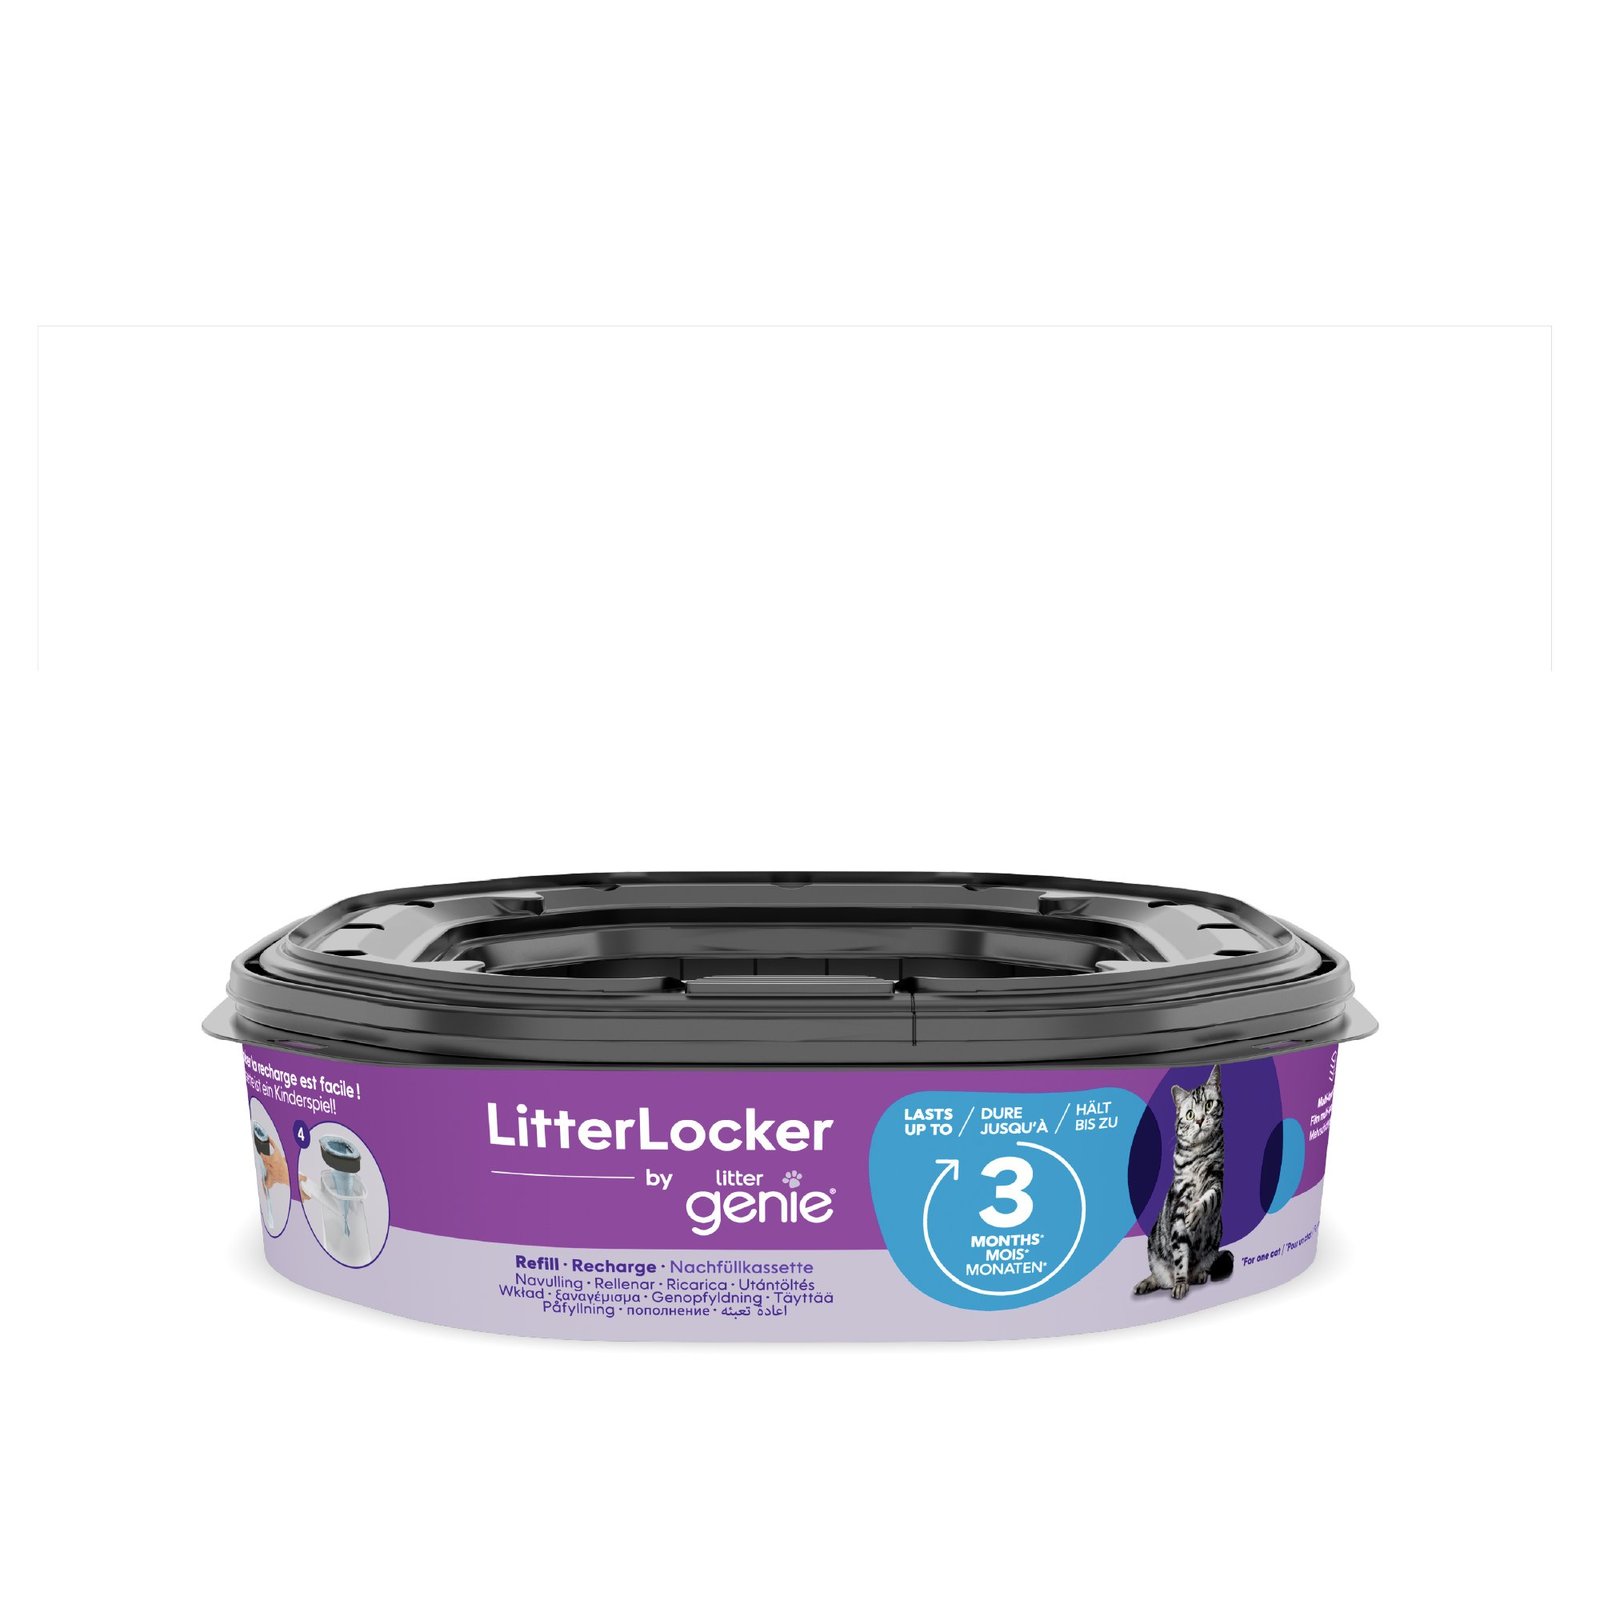 LitterLocker Refill Litterlocker by Littergenie